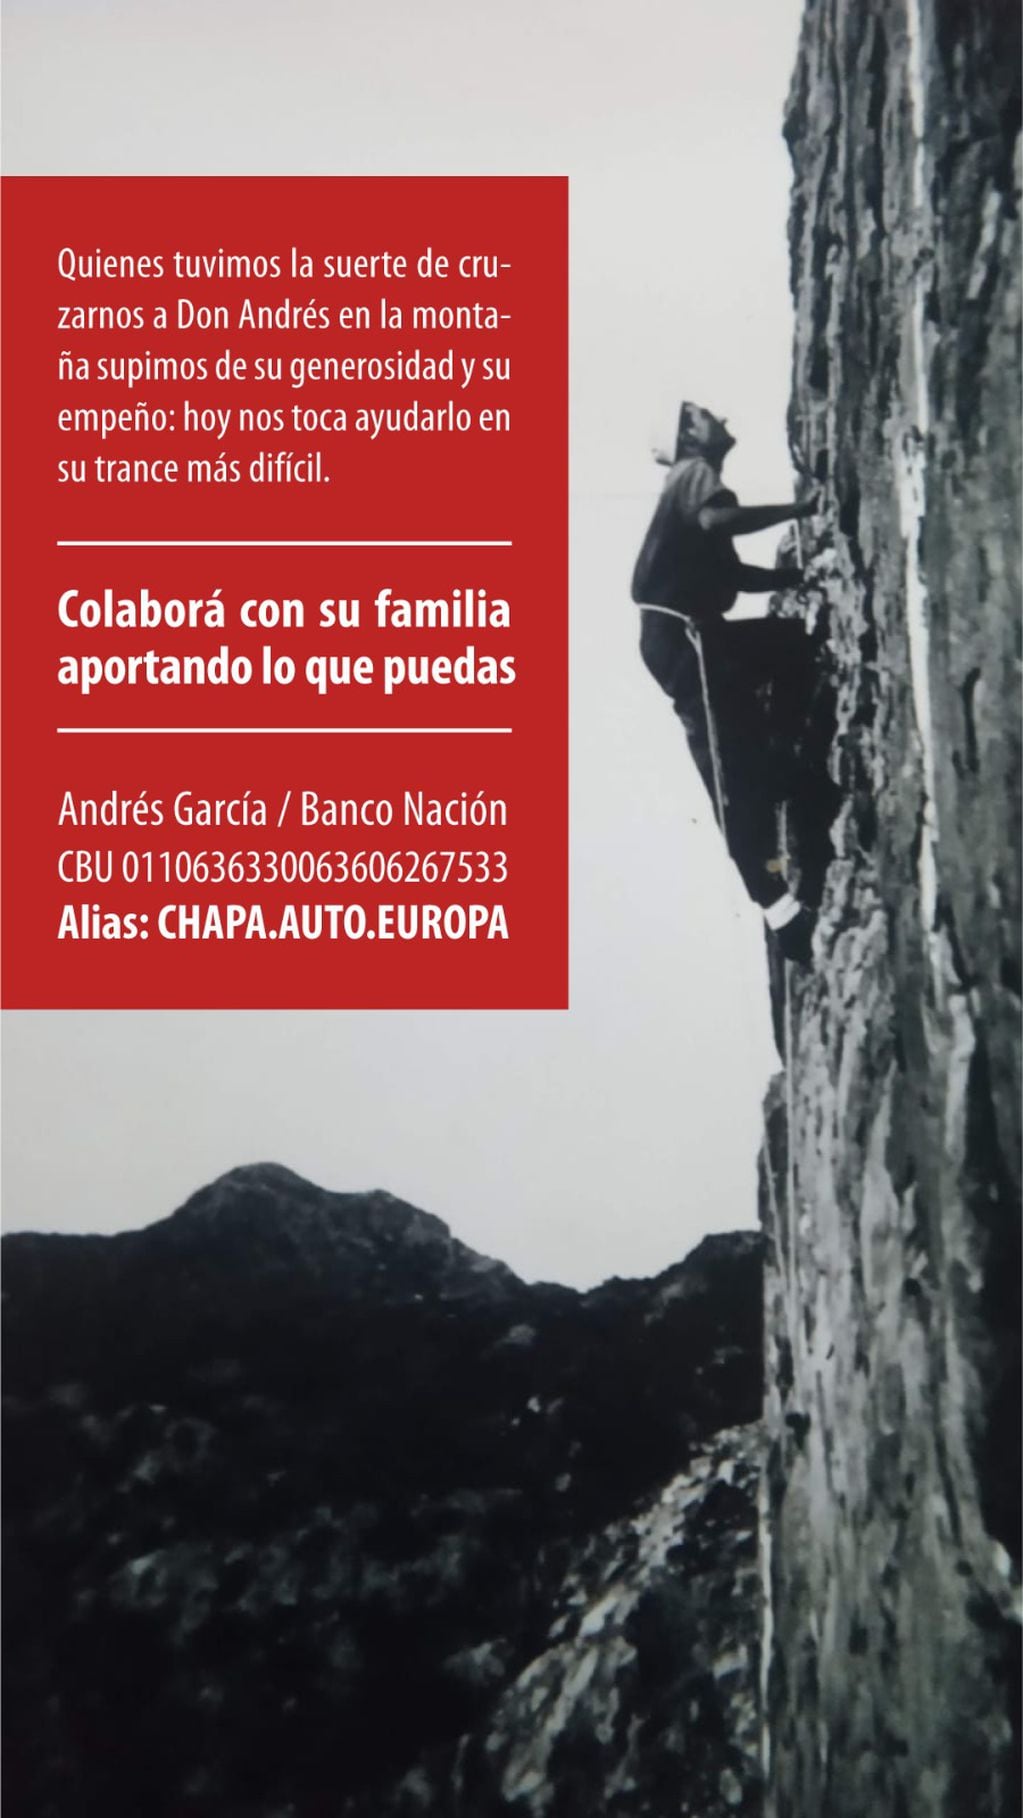 Quién es Andrés García, el historico montañista mendocino que pelea por su vida y necesita ayuda. Foto: Facebook